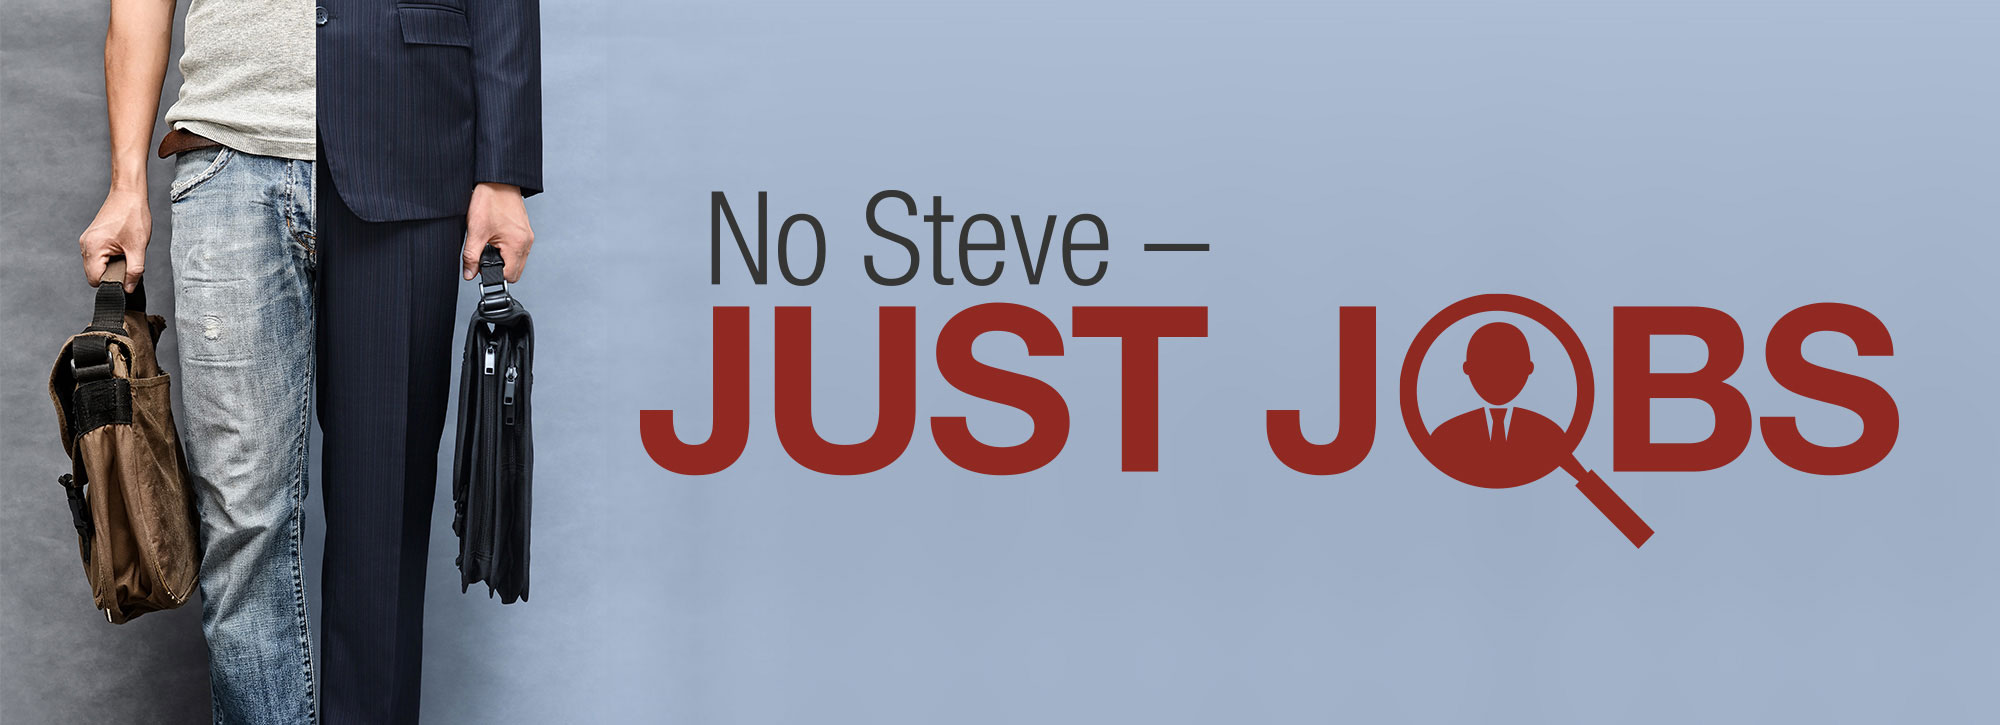 No Steve - Just Jobs